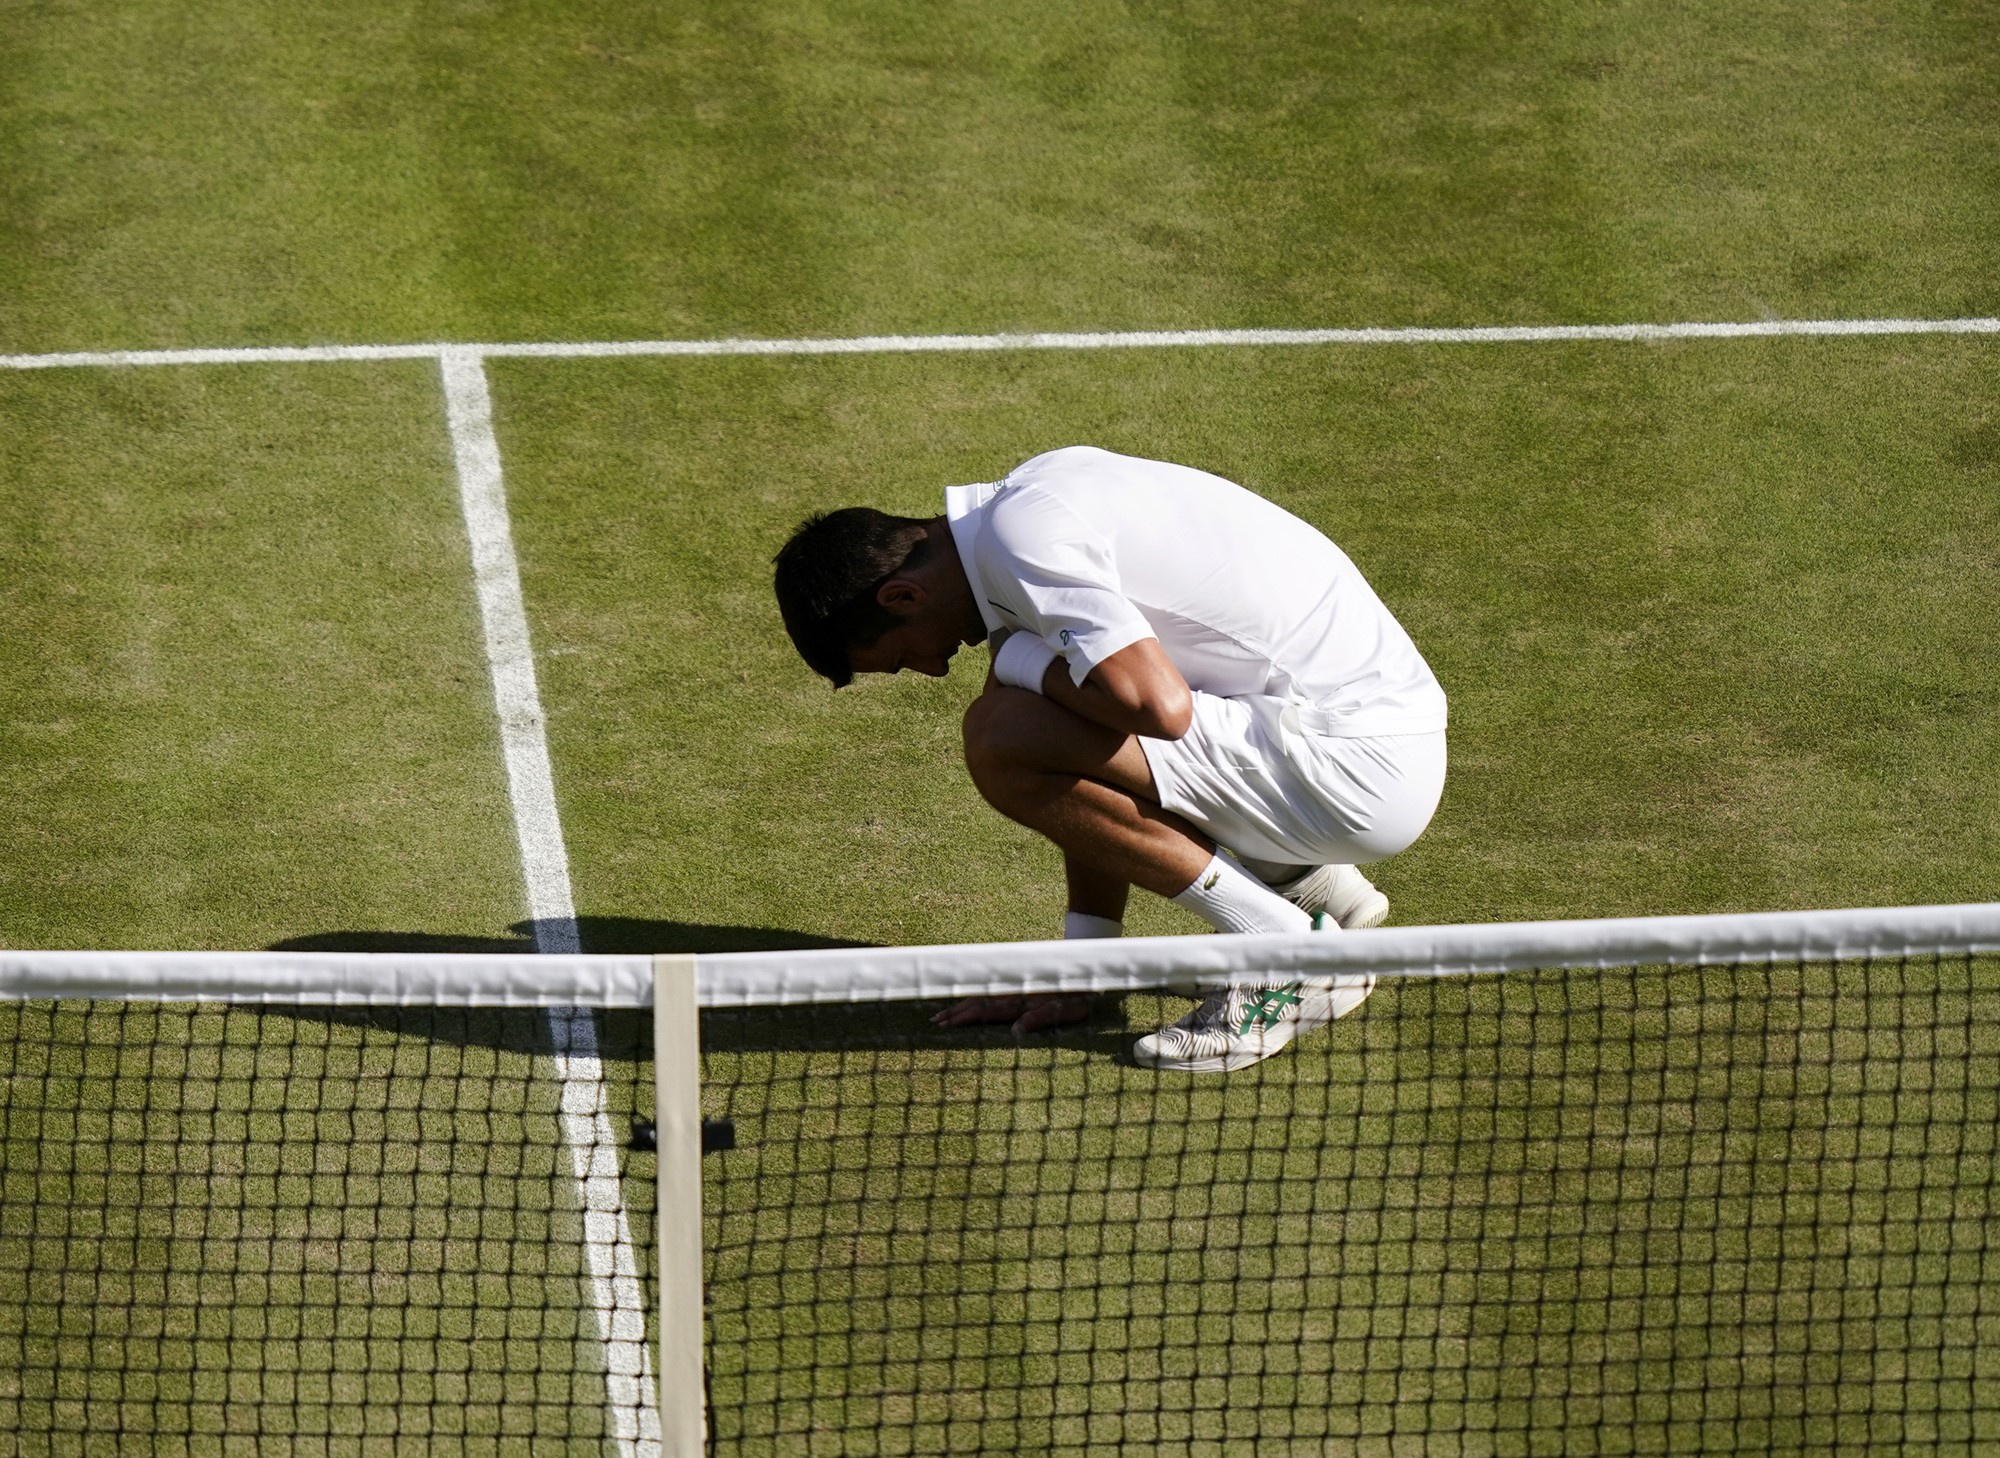 Novak Djokovic on his hanuches after winning the Wimbledon final.